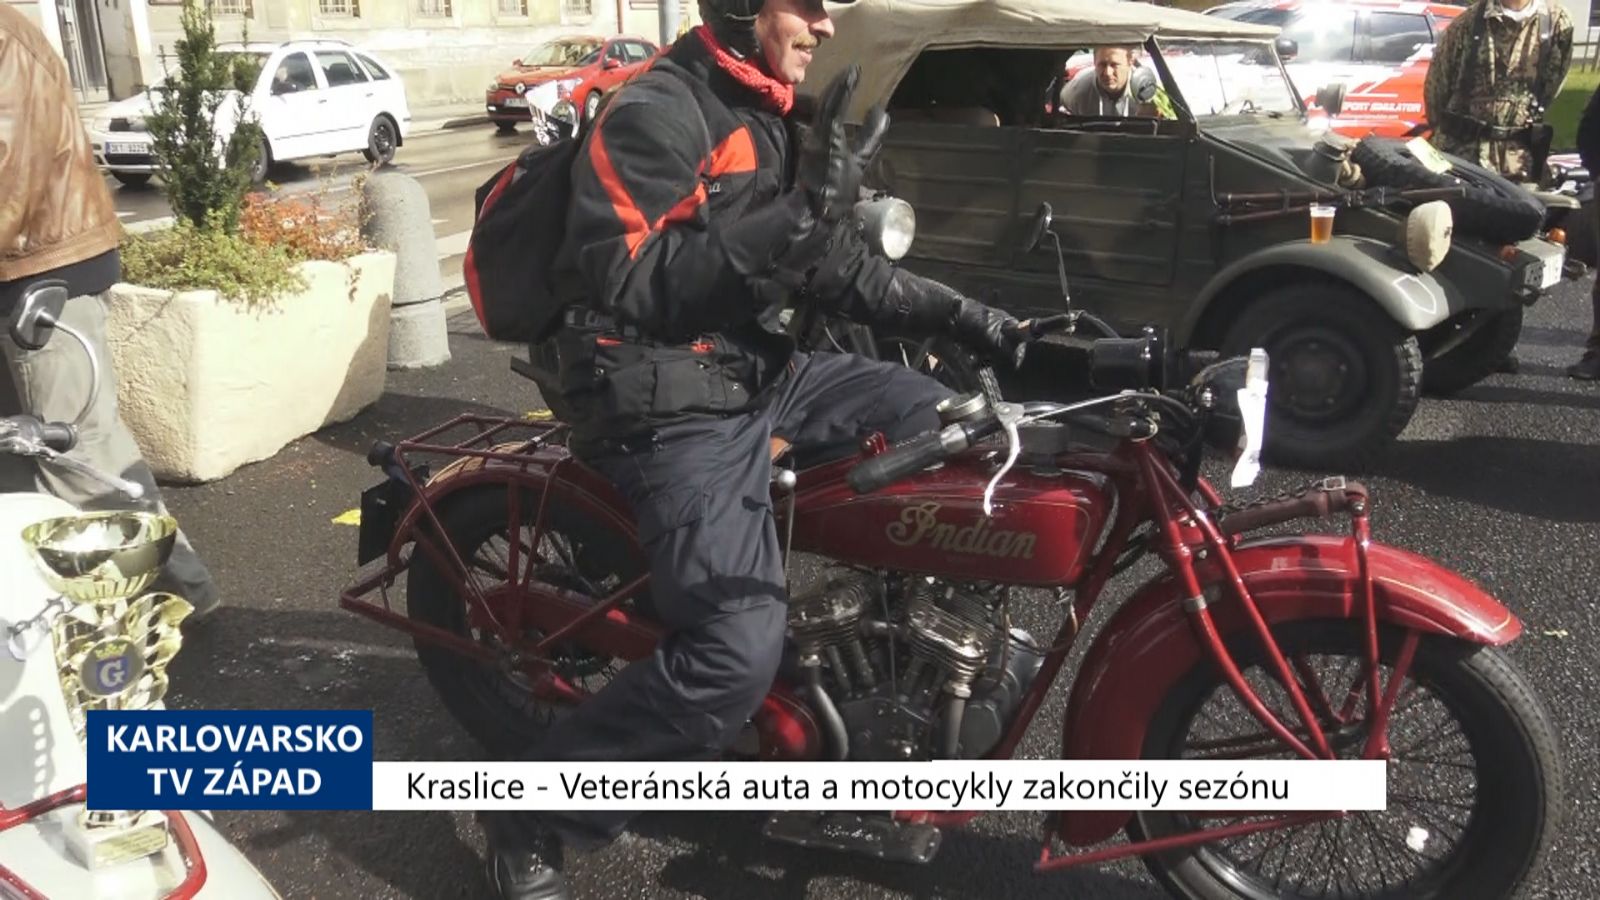 Kraslice: Veteránská auta a motocykly zakončily sezónu (TV Západ)